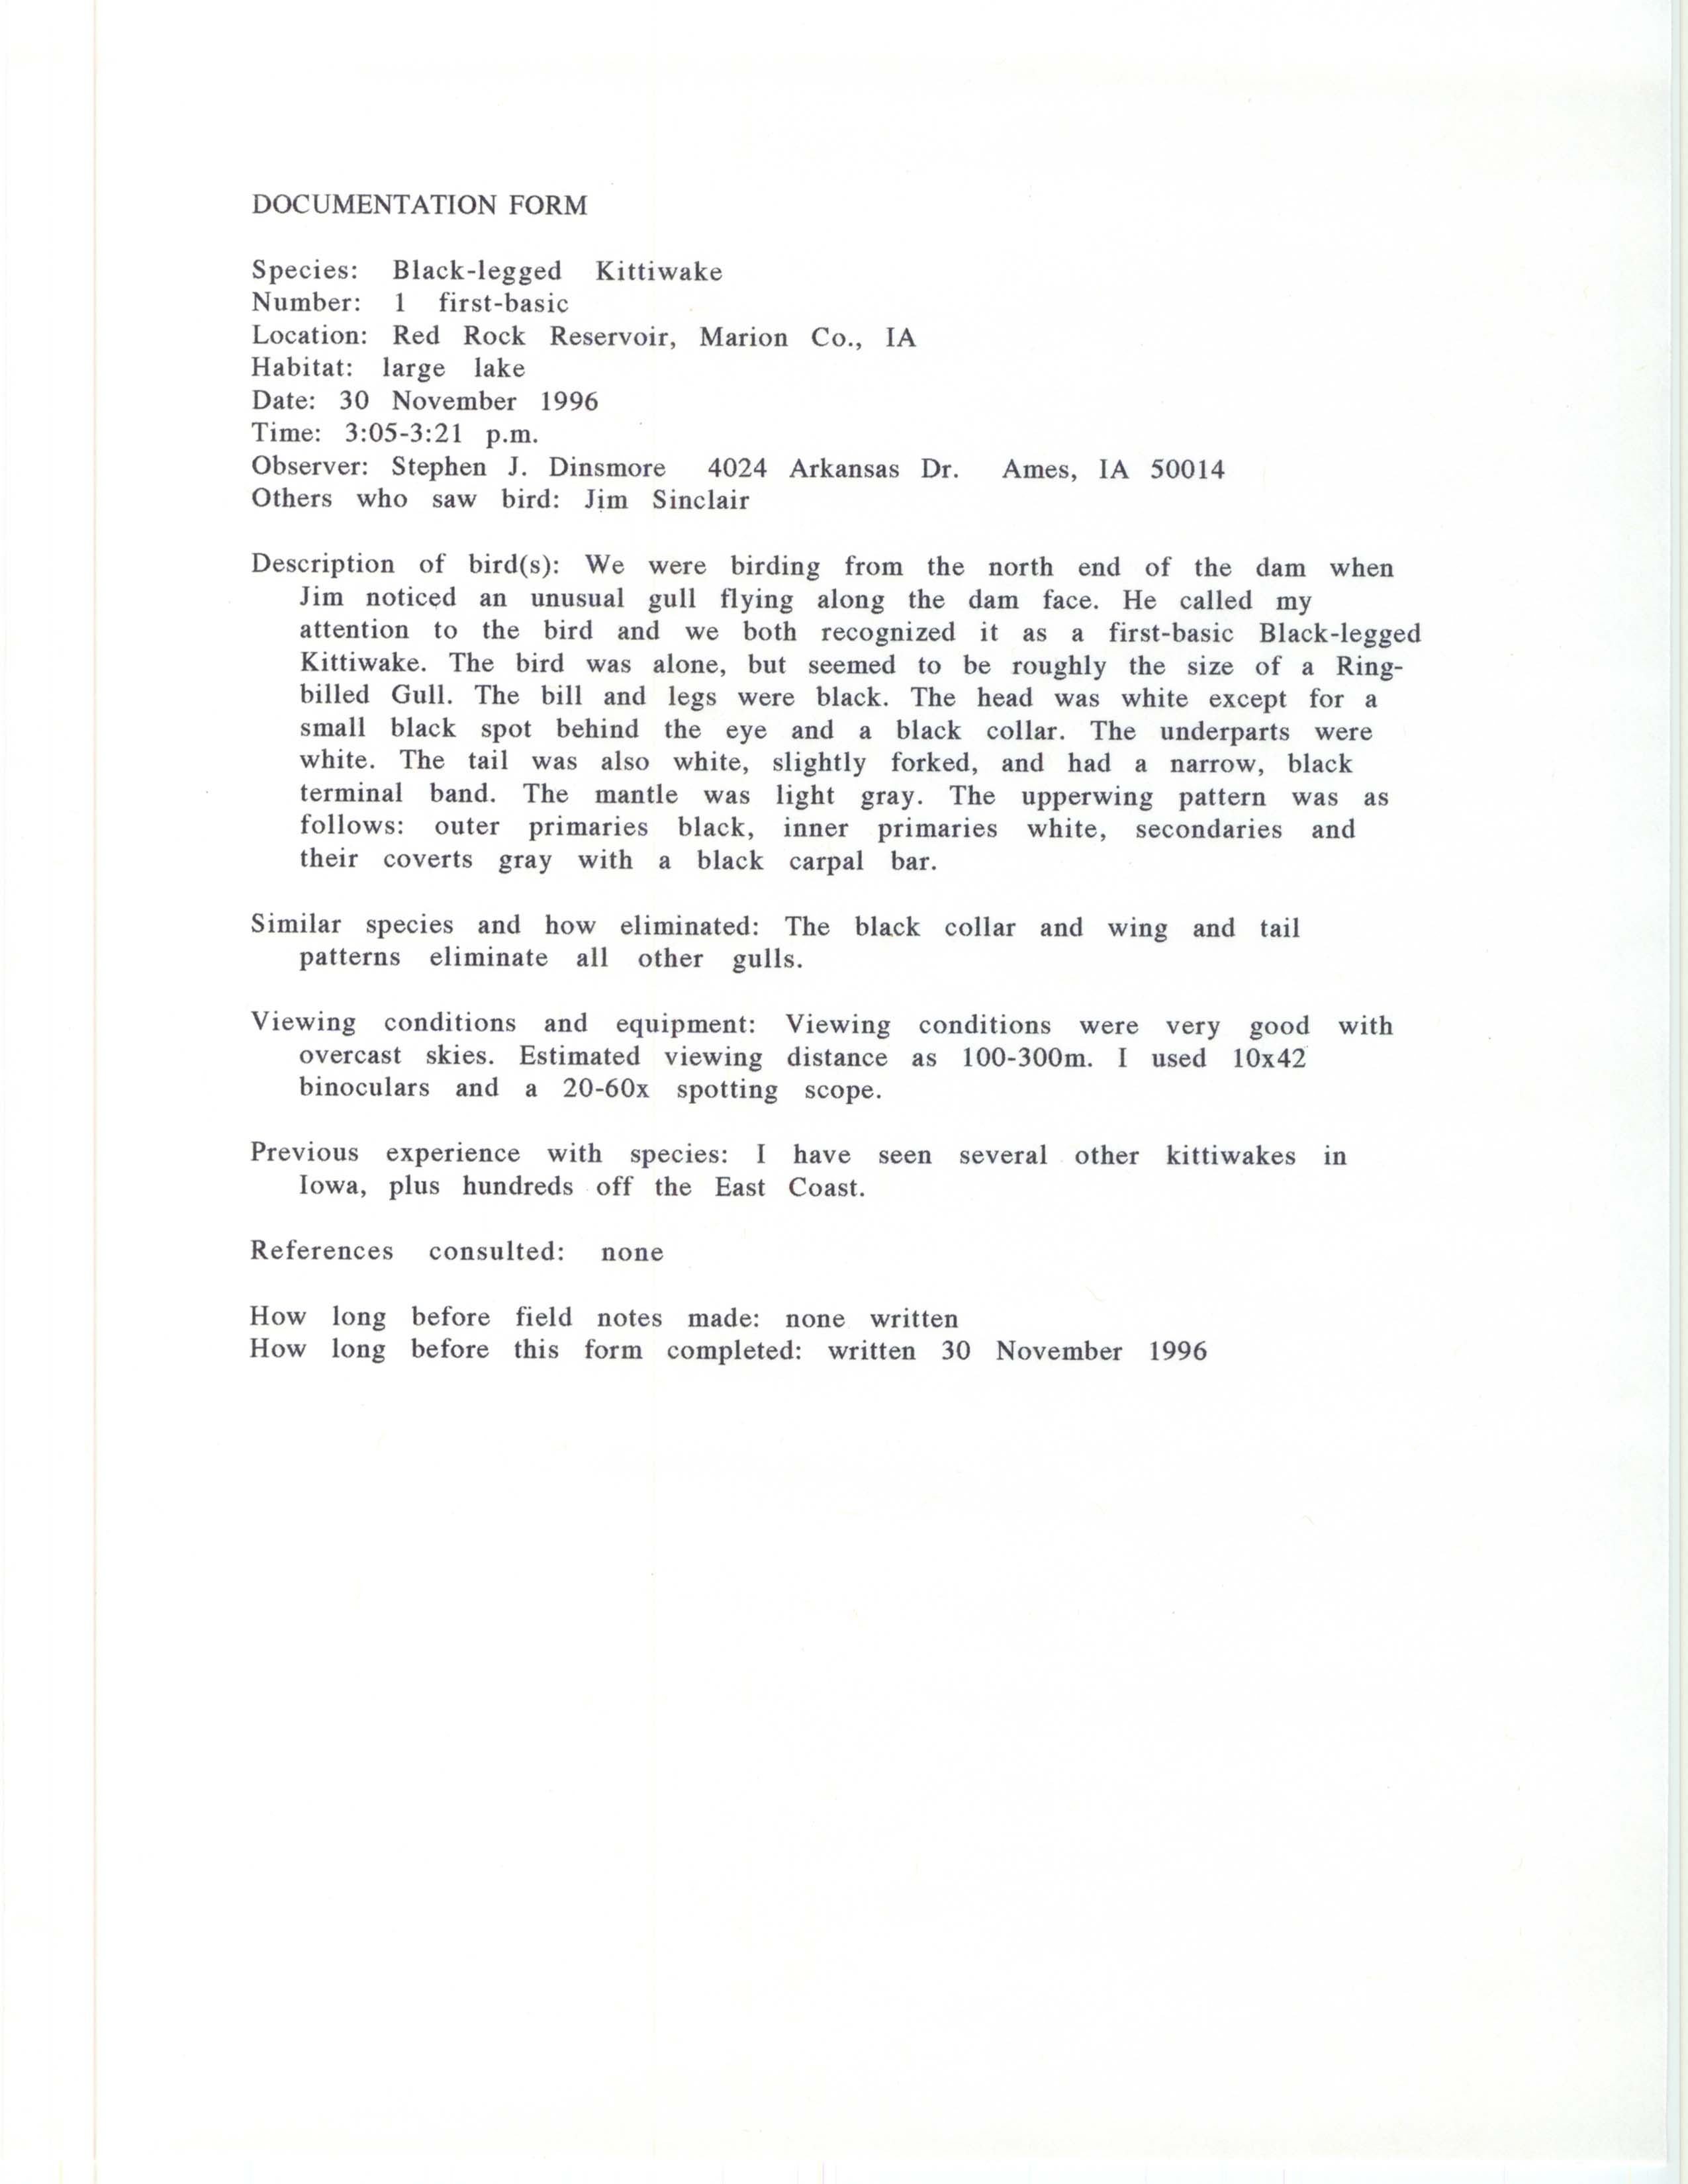 Rare bird documentation form for Black-legged Kittiwake at Red Rock Reservoir, 1996